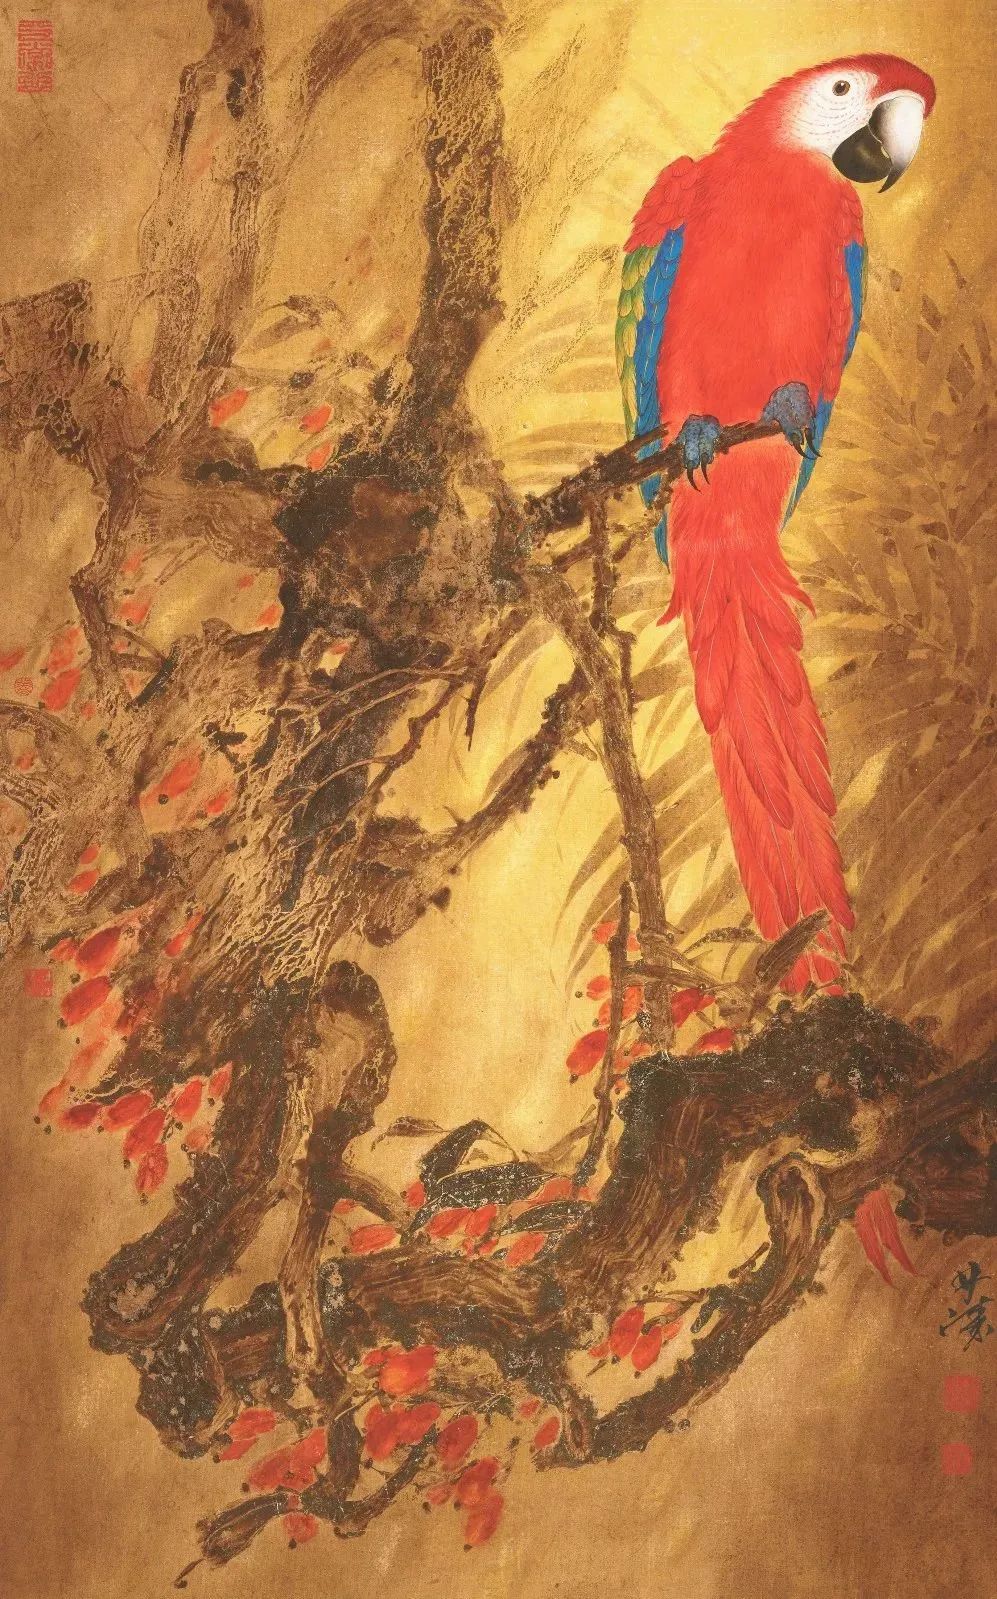 气象宏大  意境华美——著名画家林涛开创出中西融合的花鸟画新方向